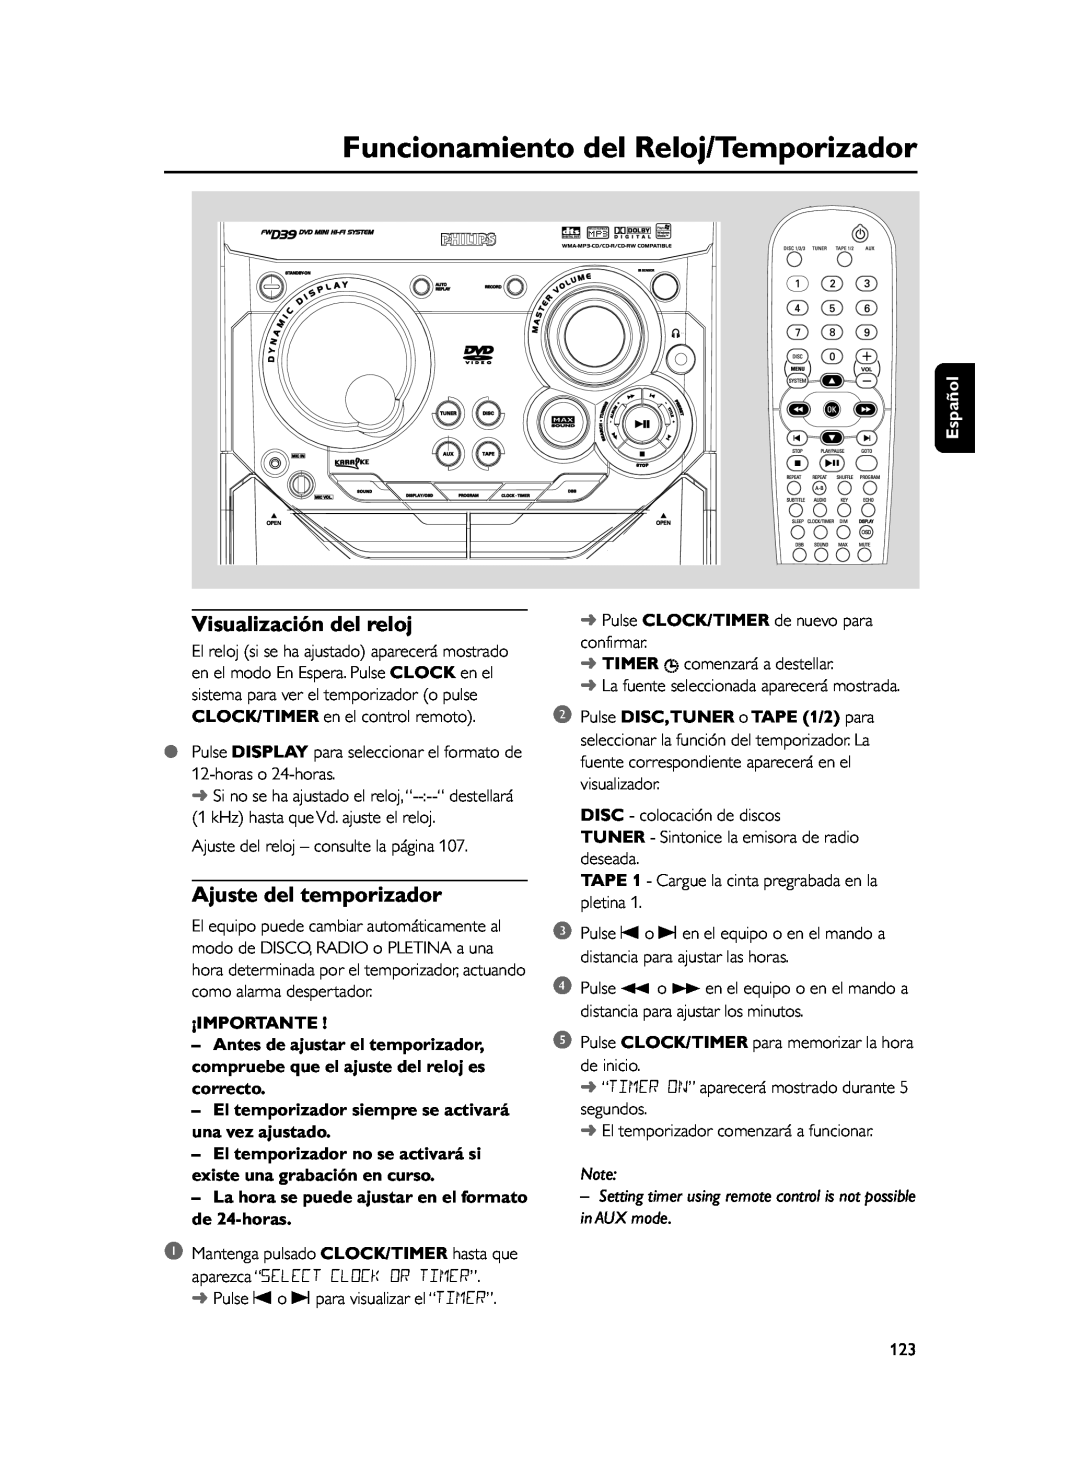 Philips FWD39 manual Funcionamiento del Reloj/Temporizador, Visualización del reloj, Ajuste del temporizador, ¡Importante 